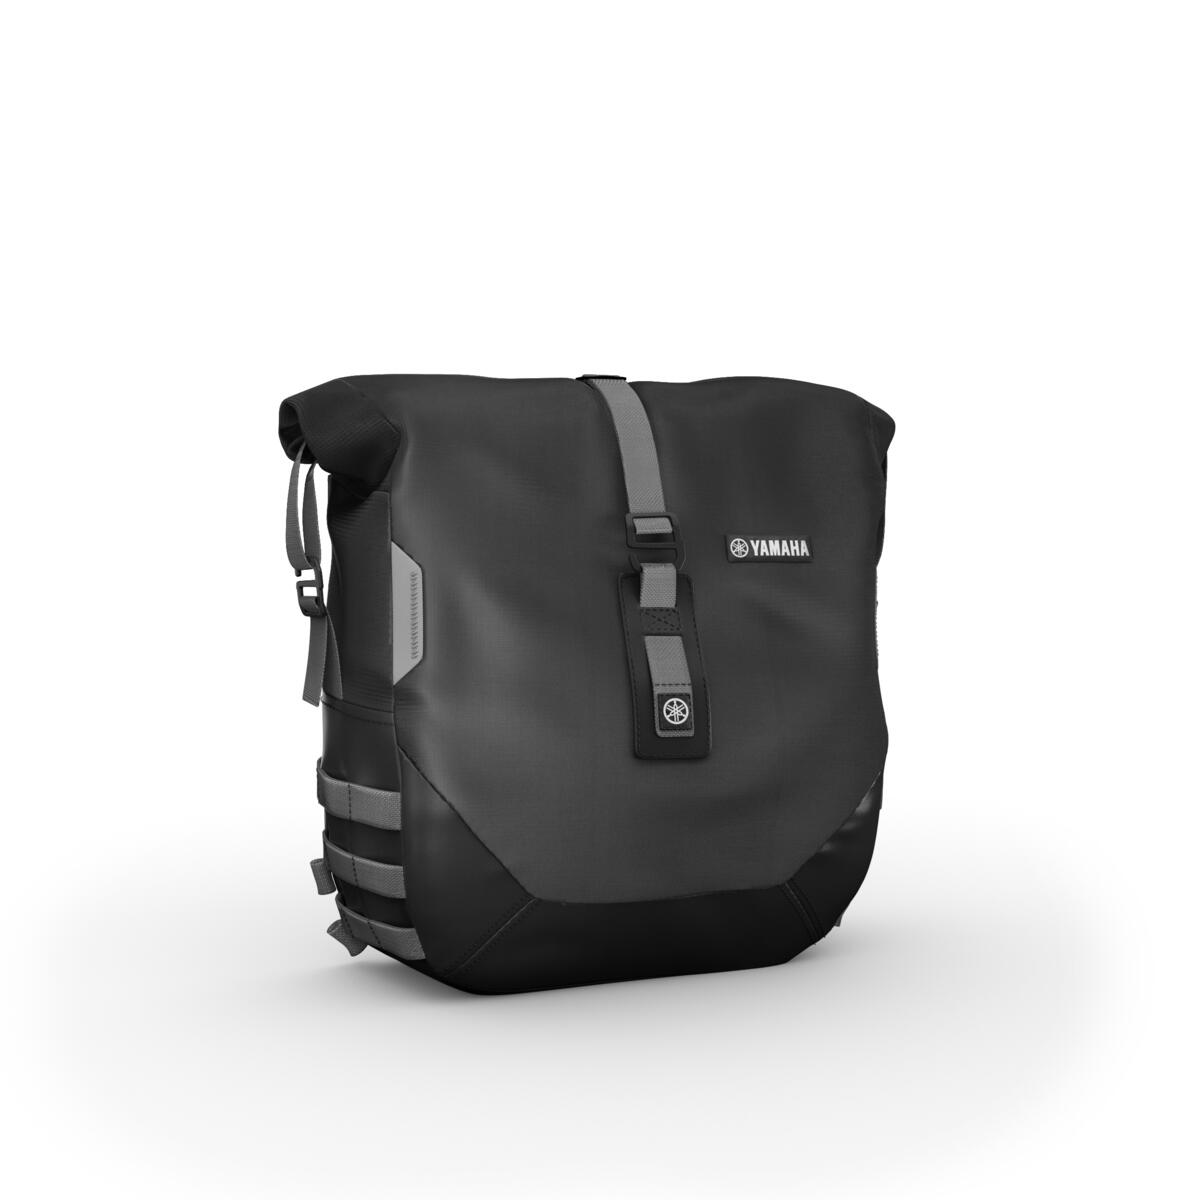 Muunna XSR900 ihanteelliseksi pitkän matkan katupyöräksi Weekend Pack -varustepaketilla. Kiinnittämällä pyörääsi kaksi 13,5 litran pehmeää laukkua, joista kummankin kantavuus on 5 kg, mahdollistaa kaiken tarpeellisen mukaan pakkaamisen pidemmillekin retkille. Helposti kiinnitettävissä laukuissa on vedenpitävät vuoraukset, jotka suojaavat matkatavaroita huonossakin säässä. Pakettiin sisältyy USB-laturi, jolla lataat esimerkiksi navigointilaitteen tai puhelimen ajomatkan aikana.